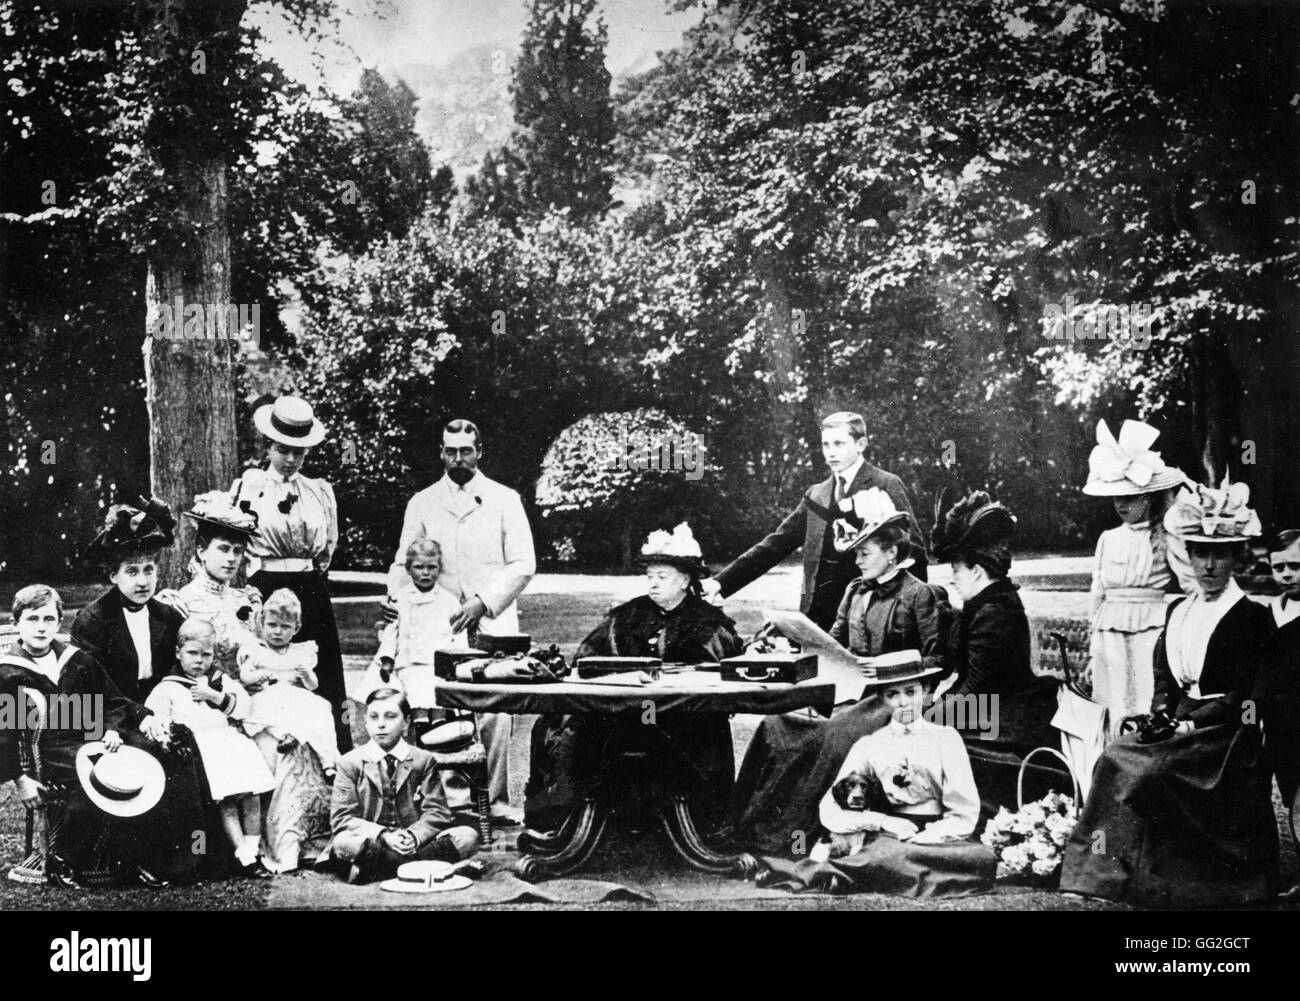 La reine Victoria entourée de toute sa famille à Osborne House. Prince George's épouse Mary a la Princesse Royale sur son genou, derrière elle est la Princesse Margaret de Connaught. Prince George (le futur George V) détient le Duc de York. Fin du xixe siècle Banque D'Images